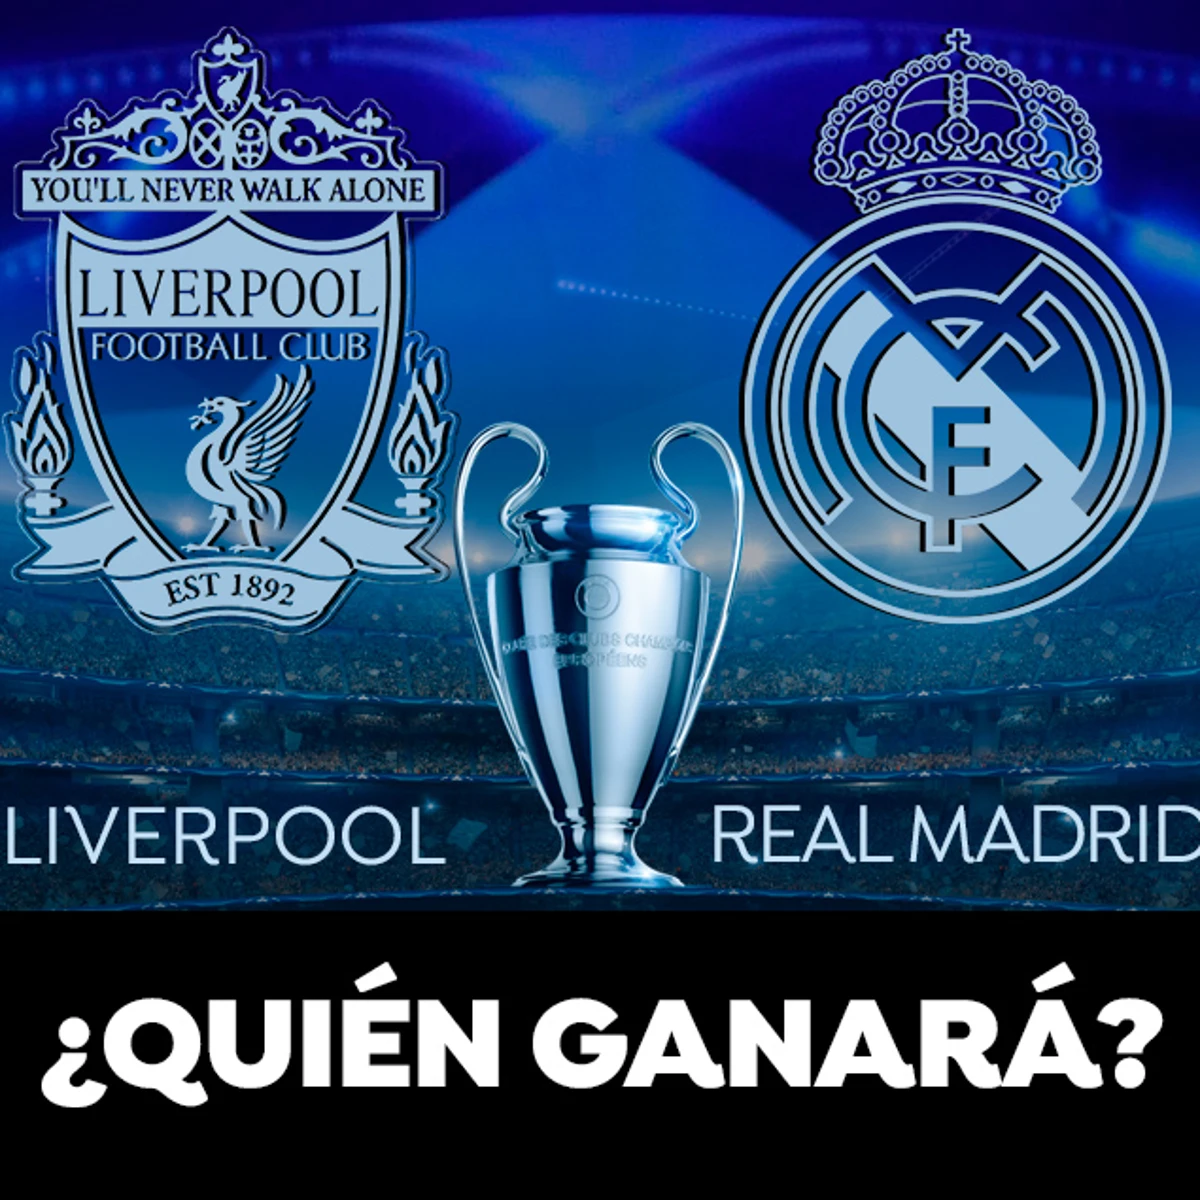 ¿Quién es más probable que gane Liverpool o Real Madrid